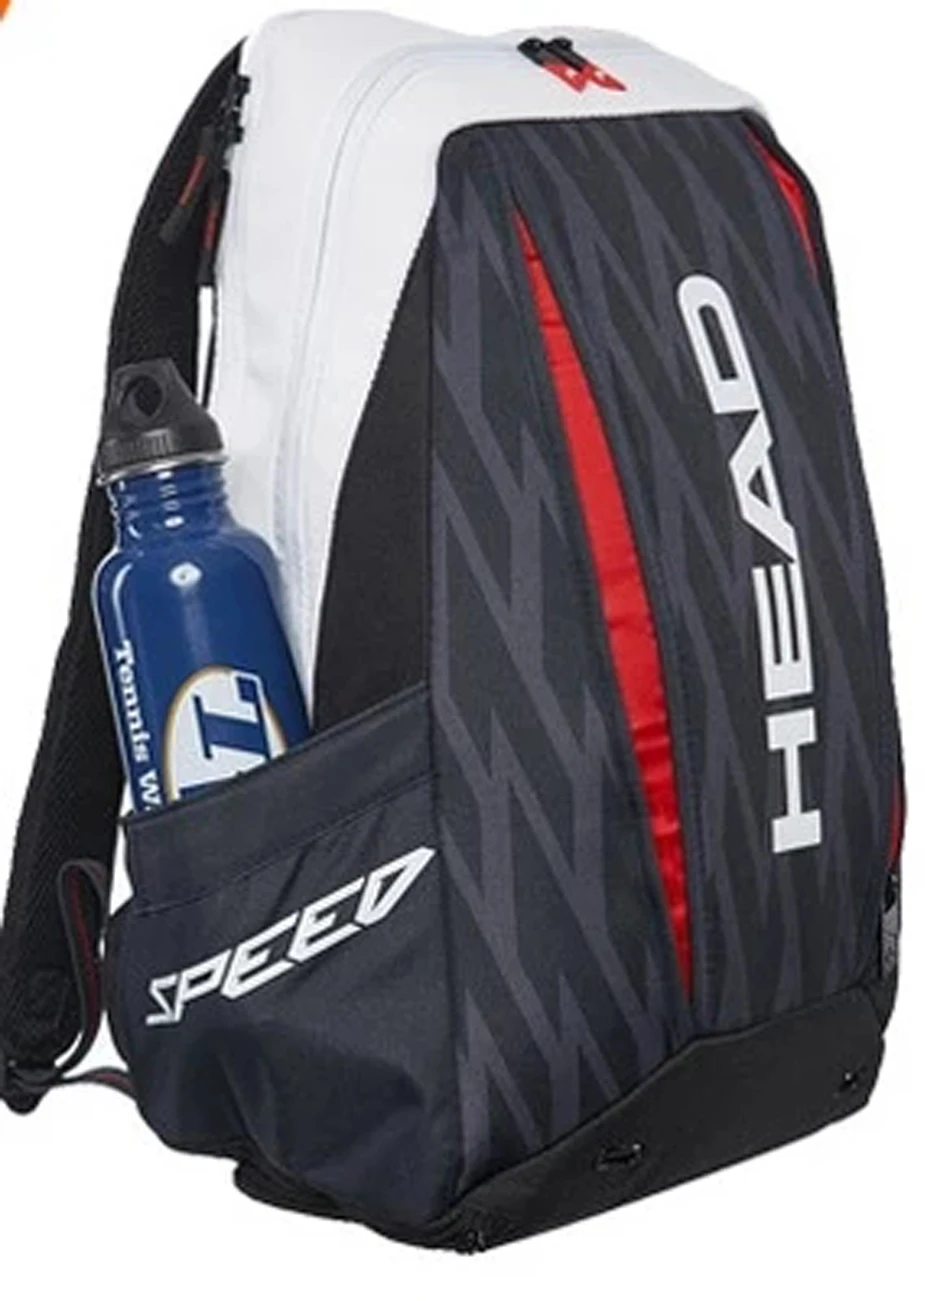 Головная теннисная сумка для теннисных ракеток сумка для бадминтона 2-3 теннисные ракетки рюкзак для бадминтона ракетка пакет для бадминтона Tenis рюкзак